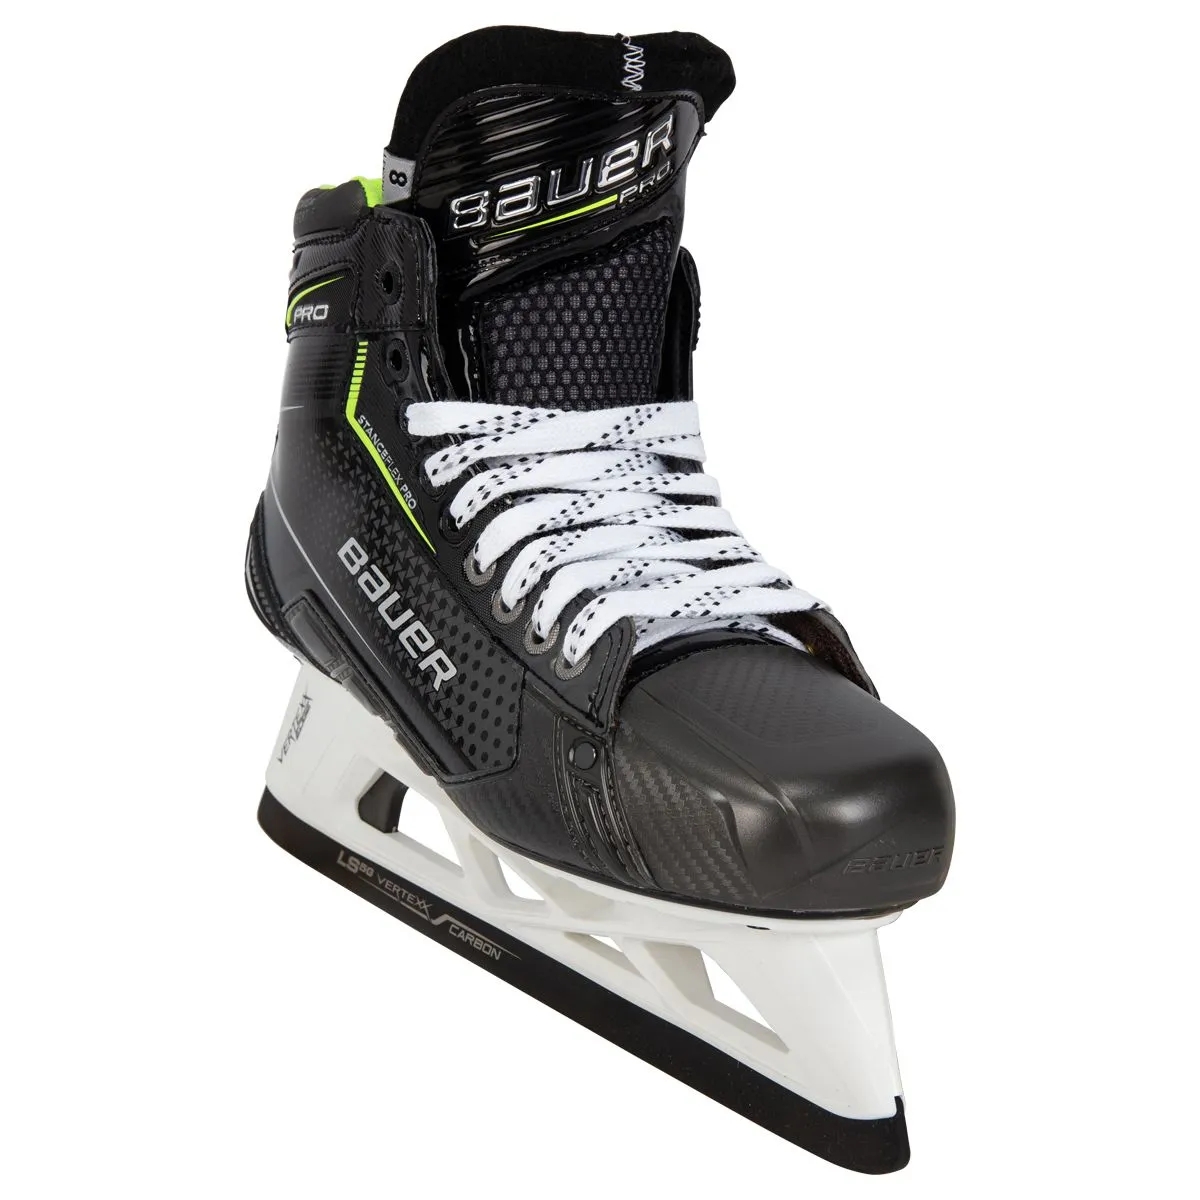 Bauer Pro Sr. Custom Goalie Skates - MyBauer (Retail)product zoom image #2